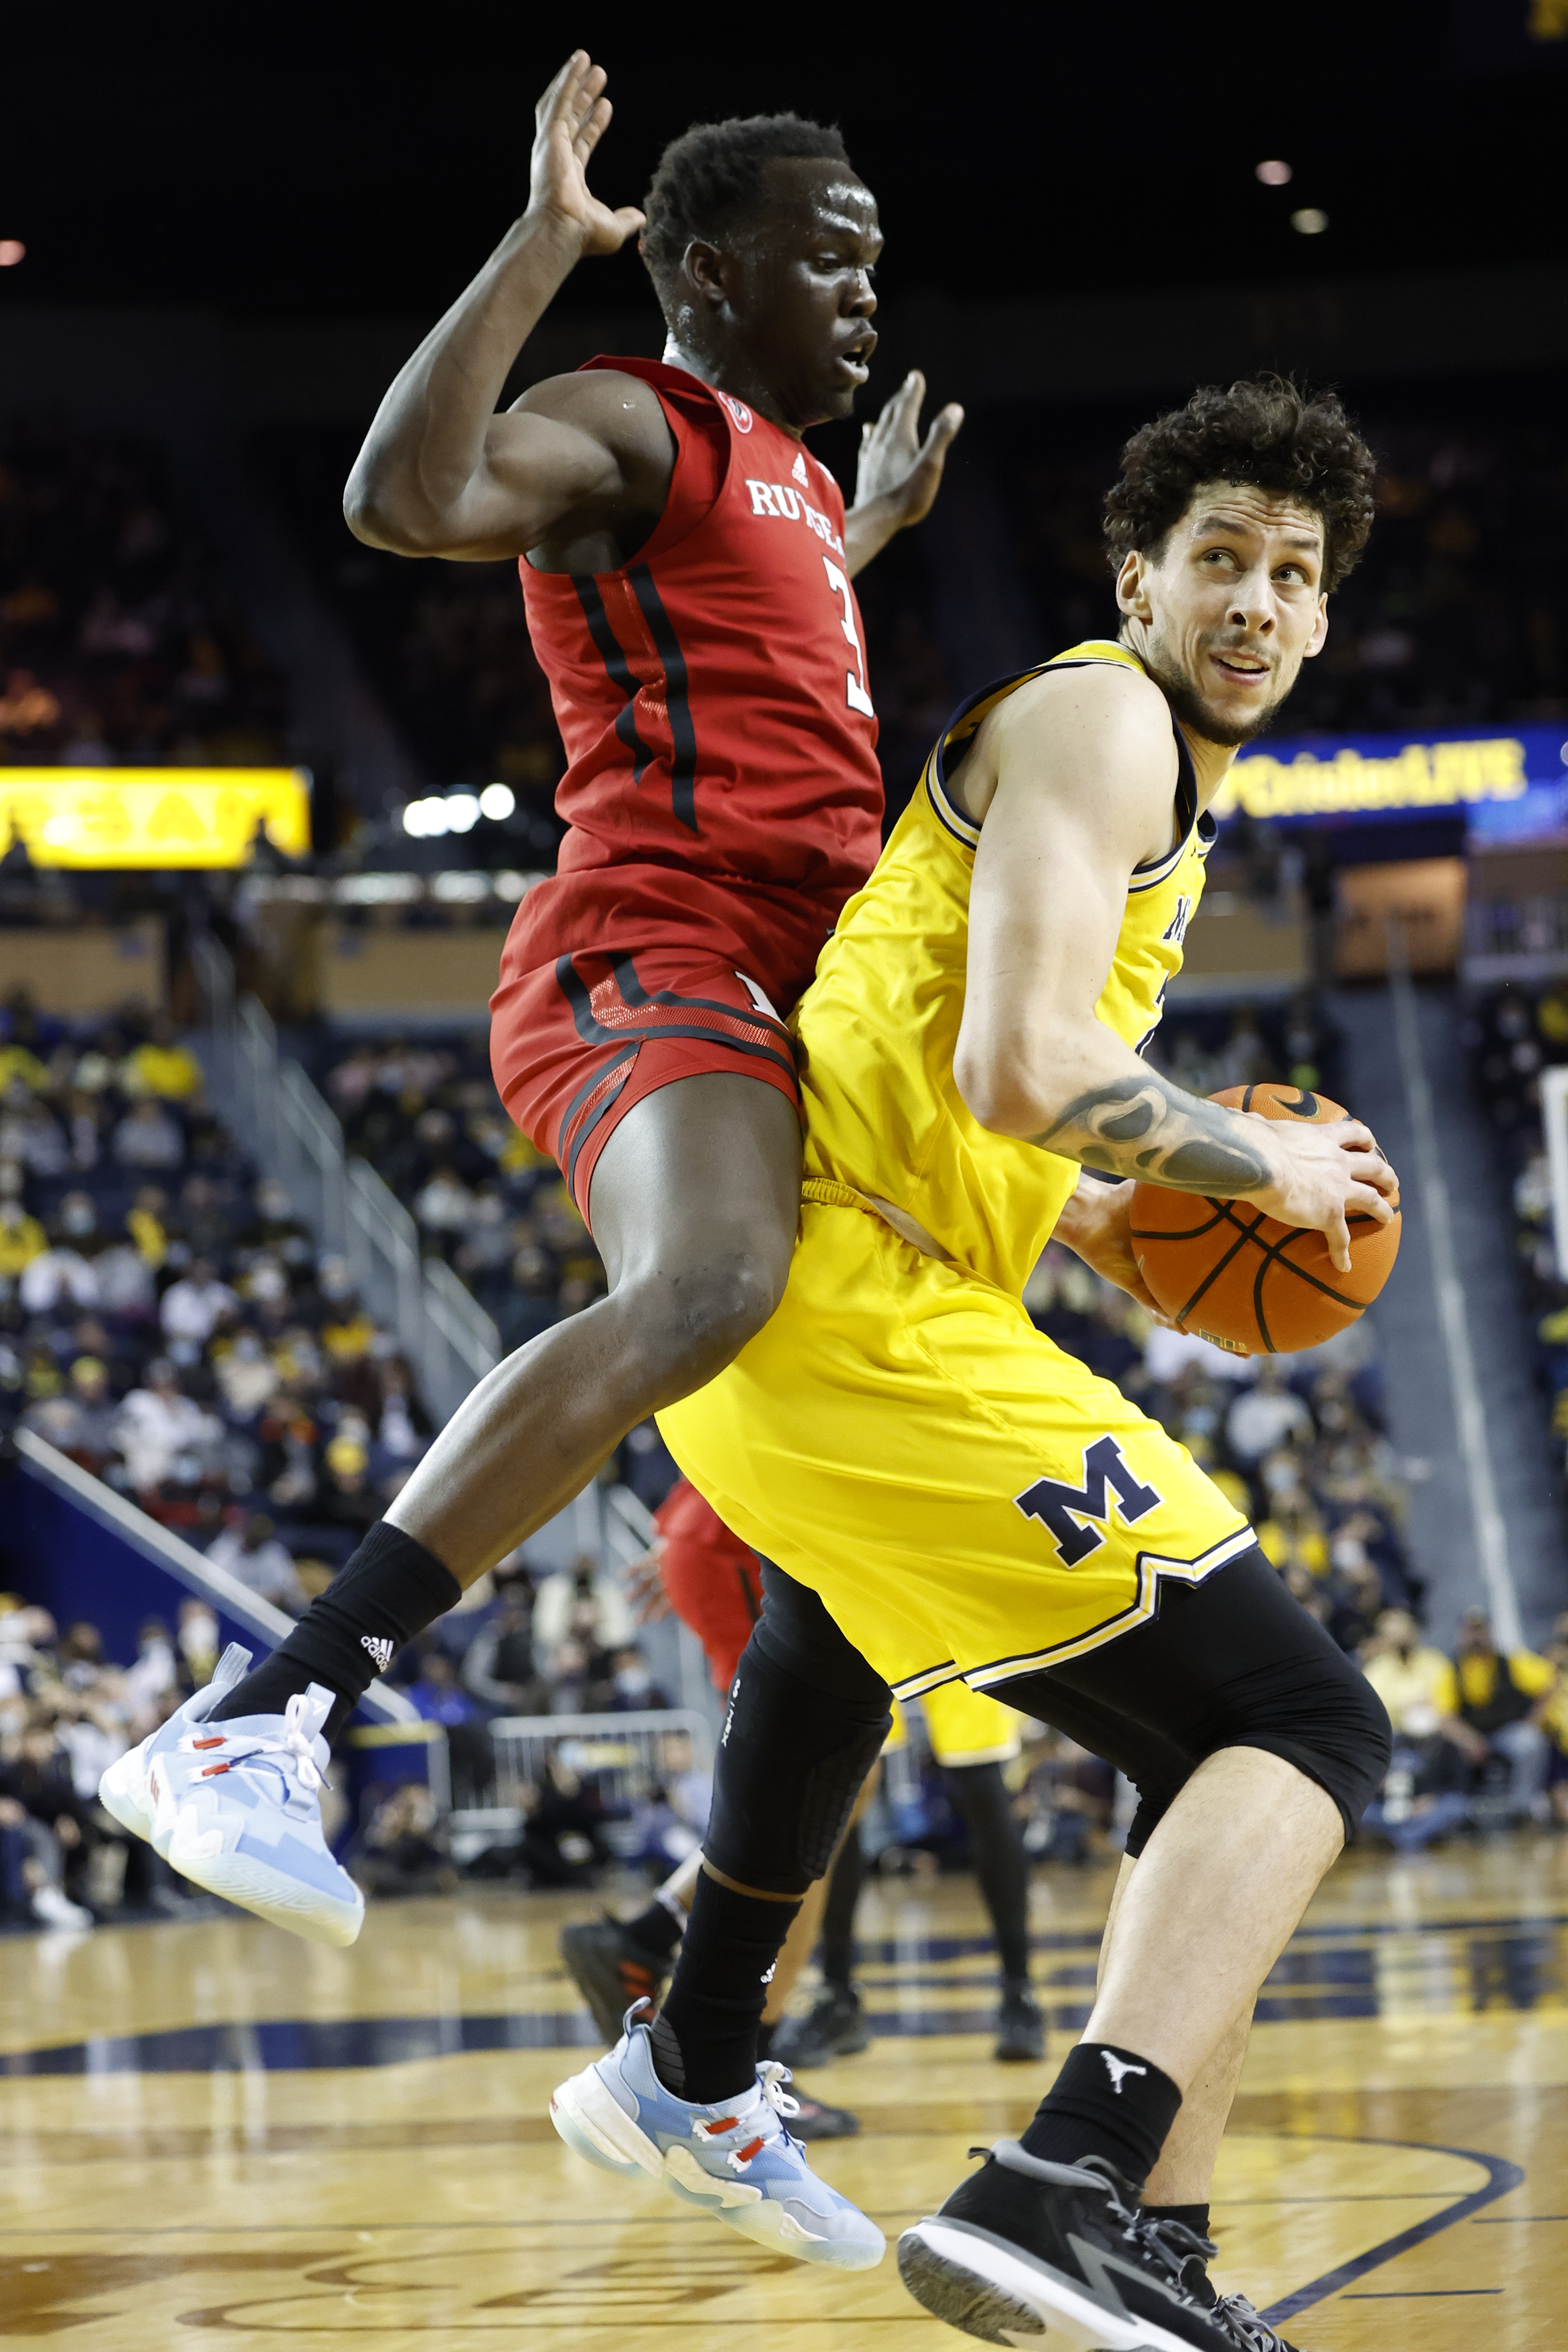 NCAA Basketball: Rutgers at Michigan